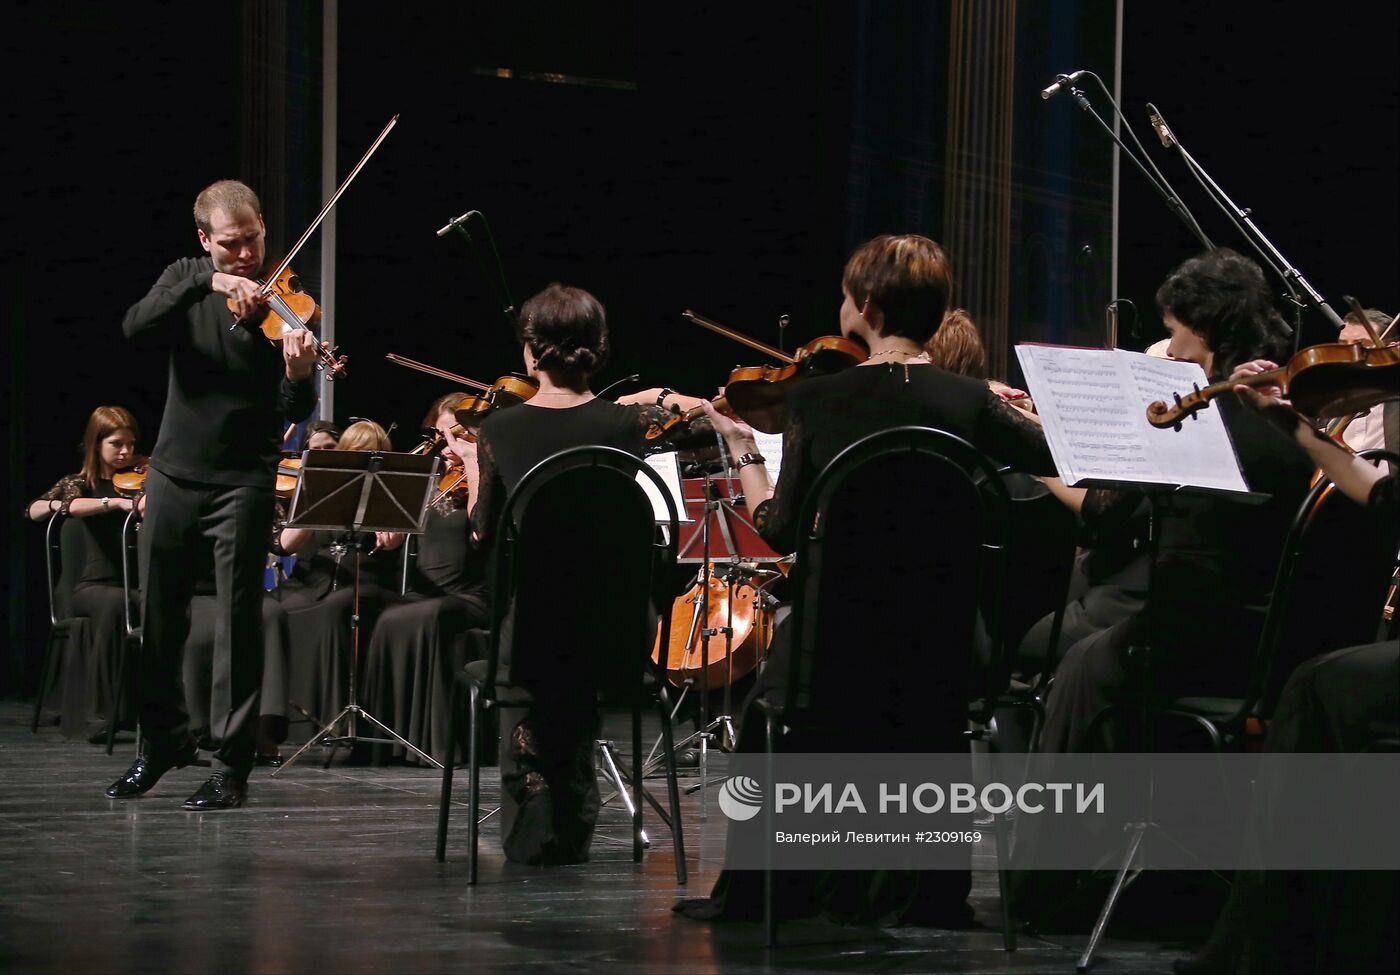 Юбилейный концерт Дмитрия Когана "Пять великих скрипок"